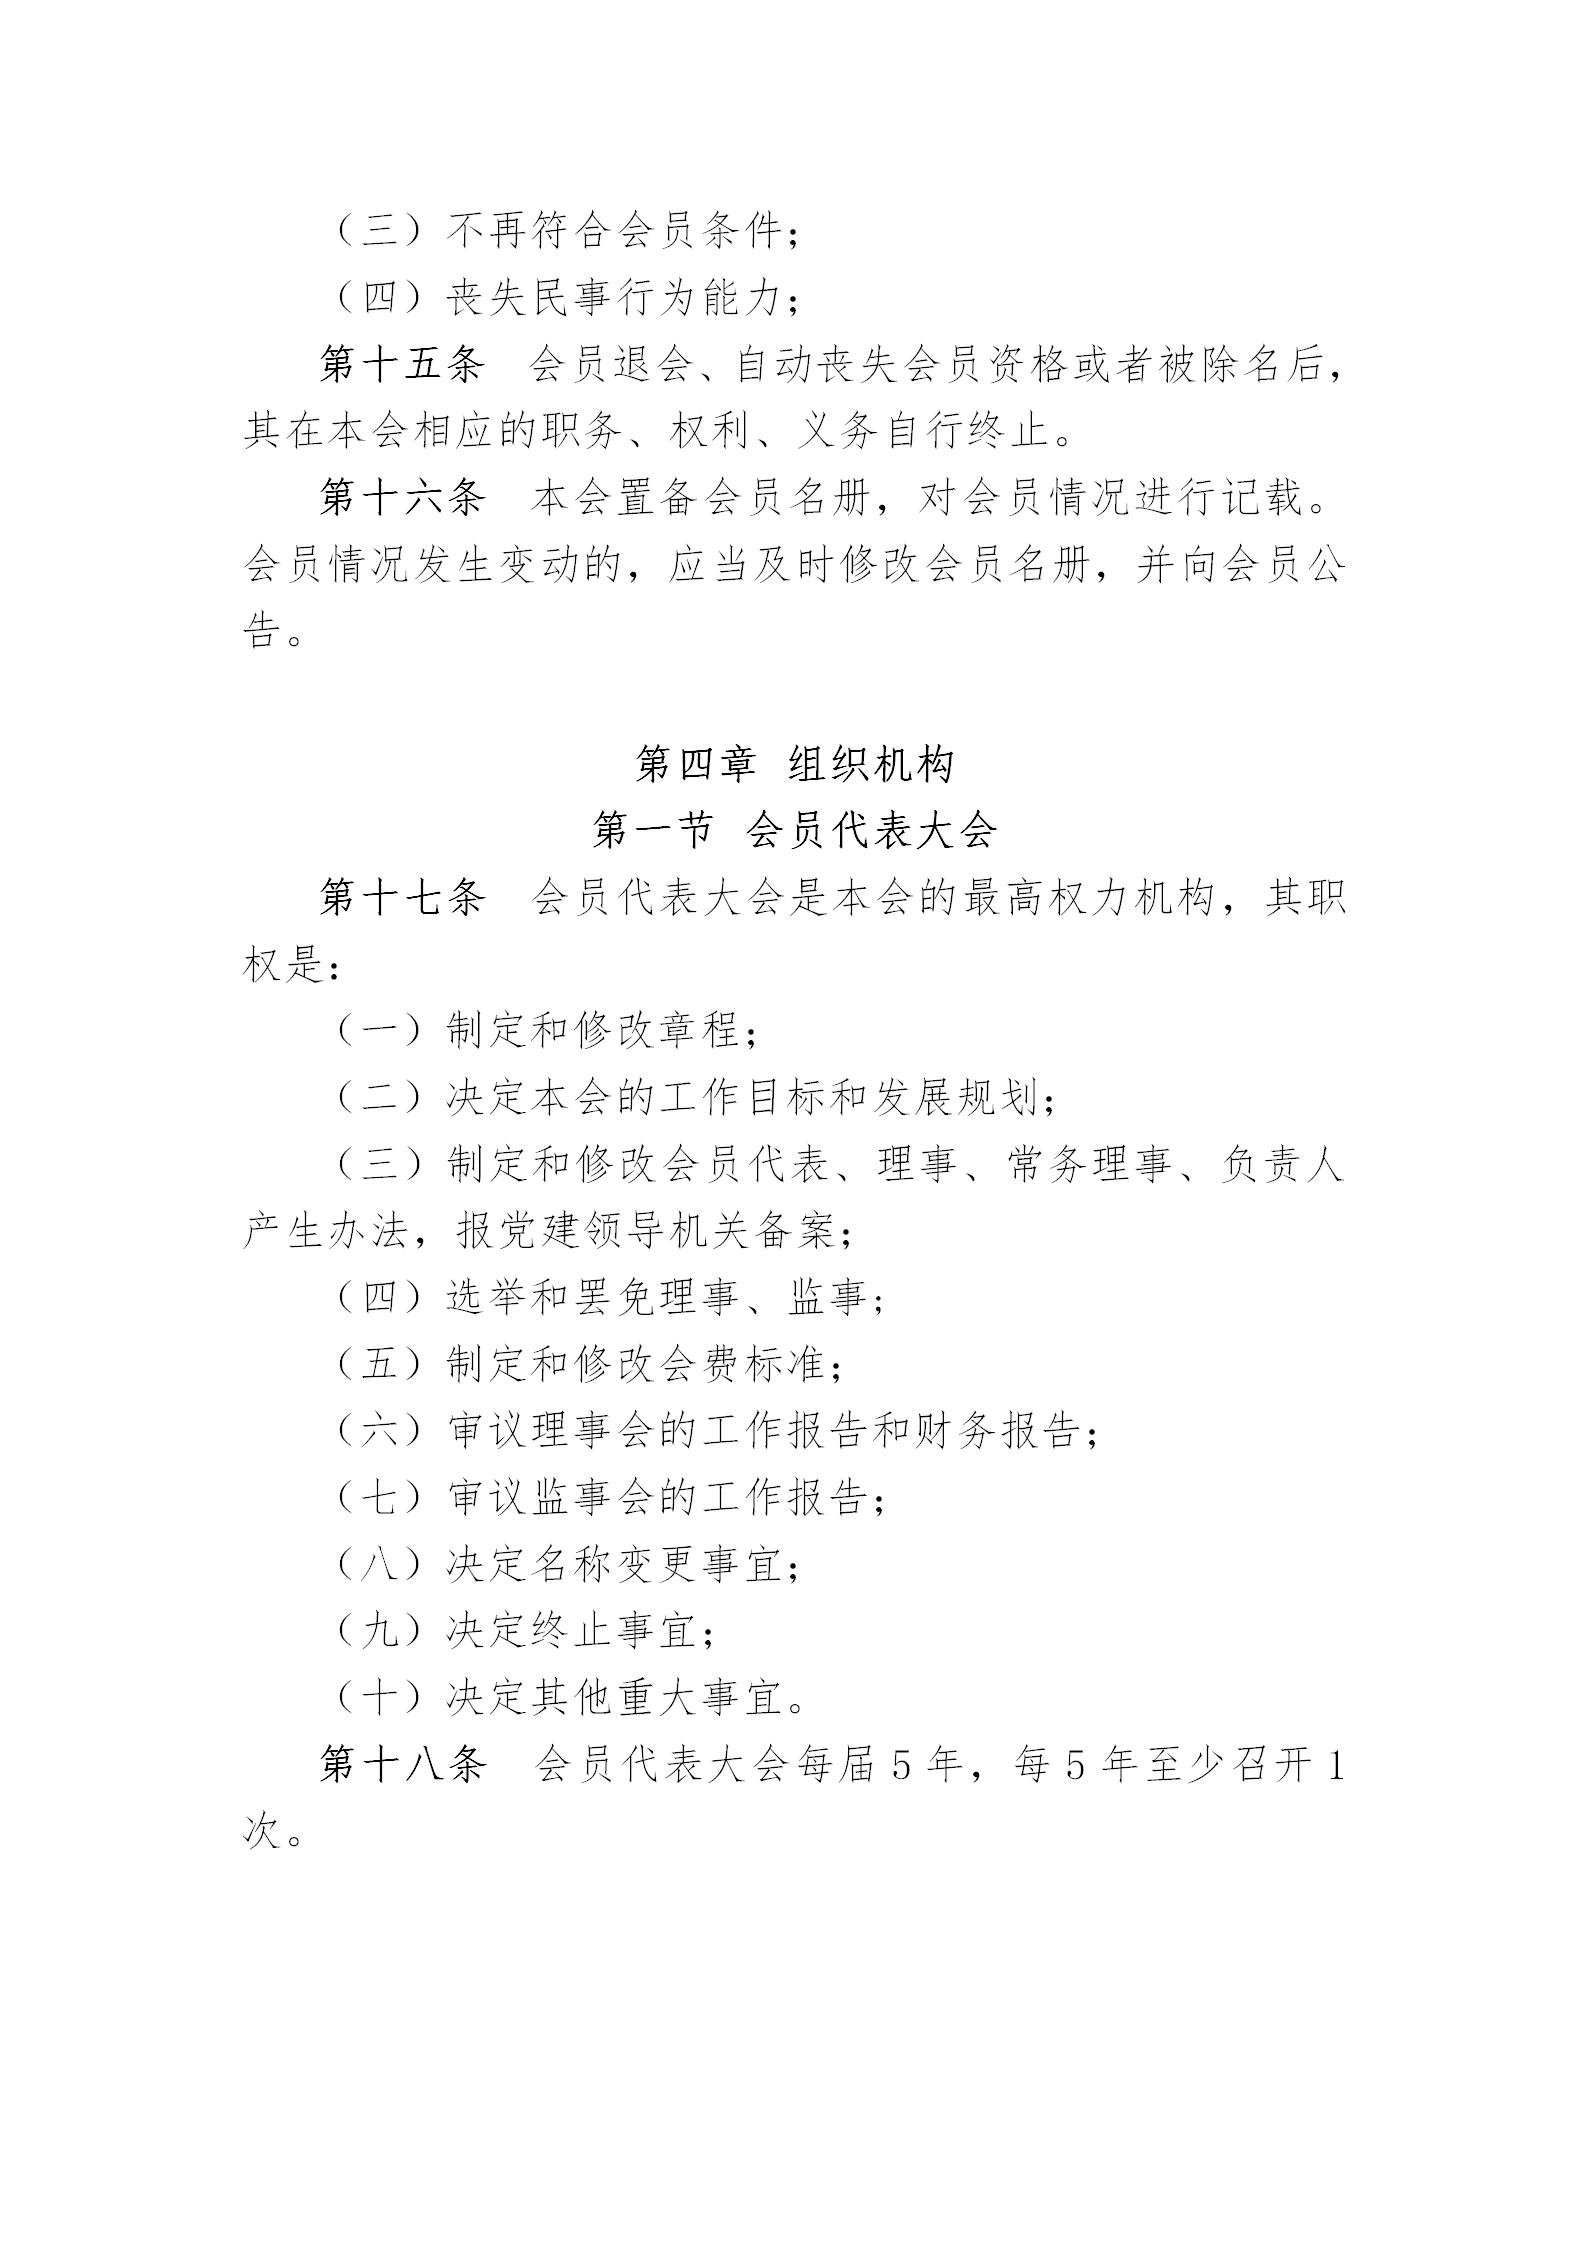 中国演艺设备技术协会章程(定稿)_05.jpg